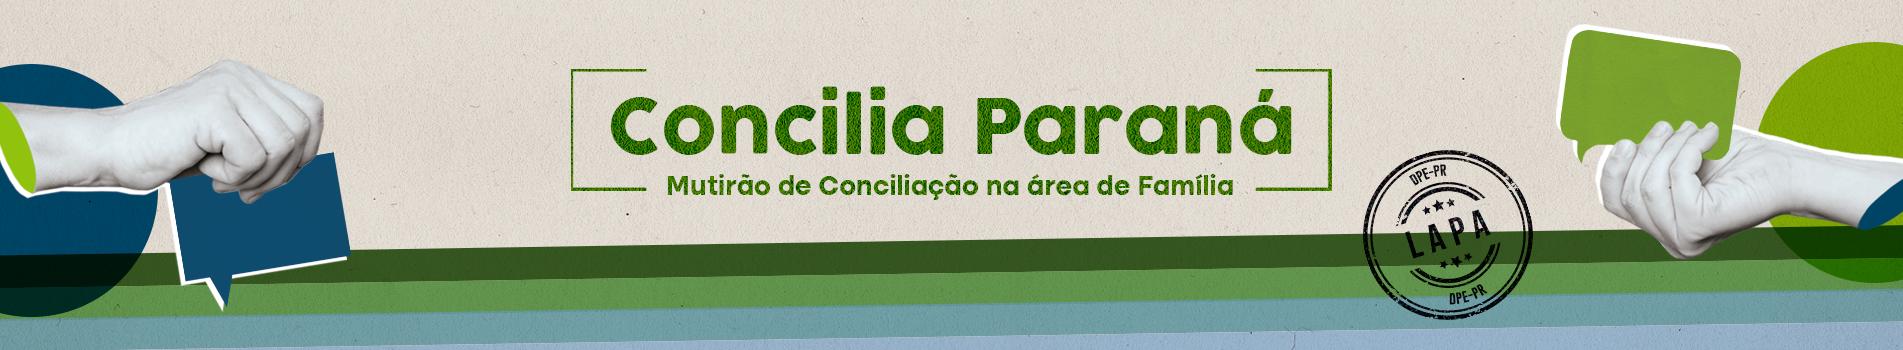 Mutirão da Defensoria Pública do Paraná na Lapa dia 1º de dezembro: faça o pré-cadastro para facilitar o atendimento